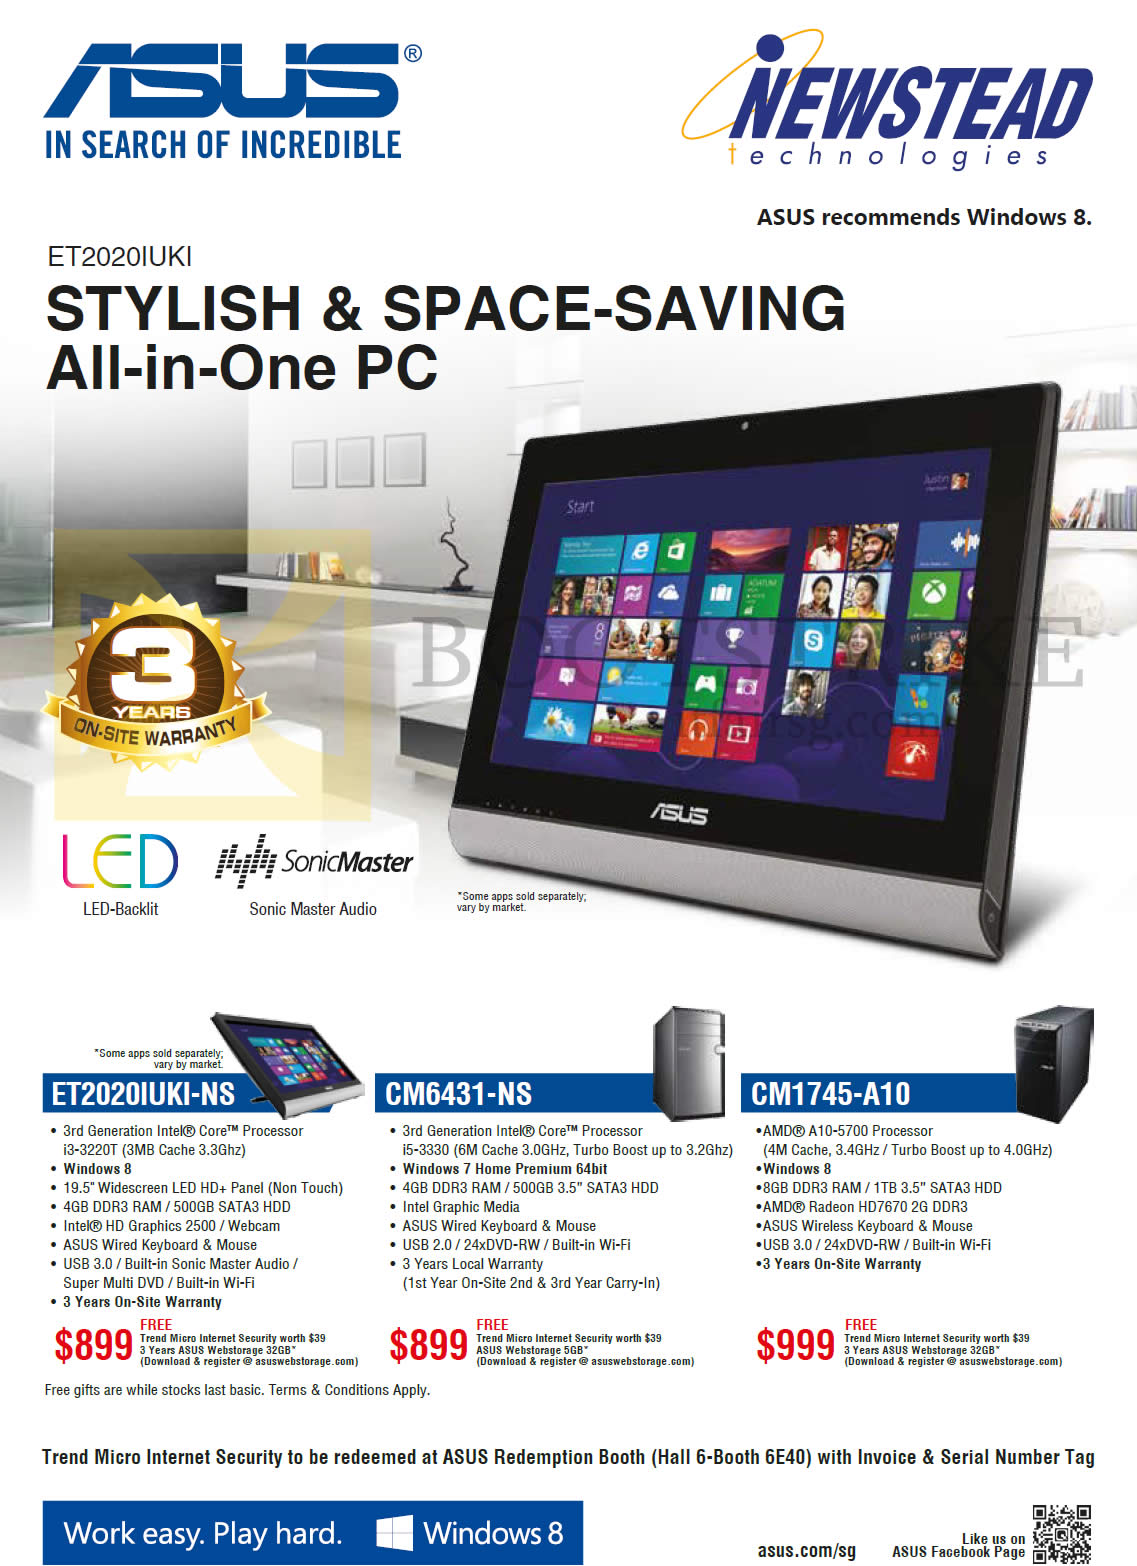 SITEX 2013 price list image brochure of ASUS Newstead AIO Desktop PCs ET2020IUKI-NS, CM6431-NS, CM1745-A10